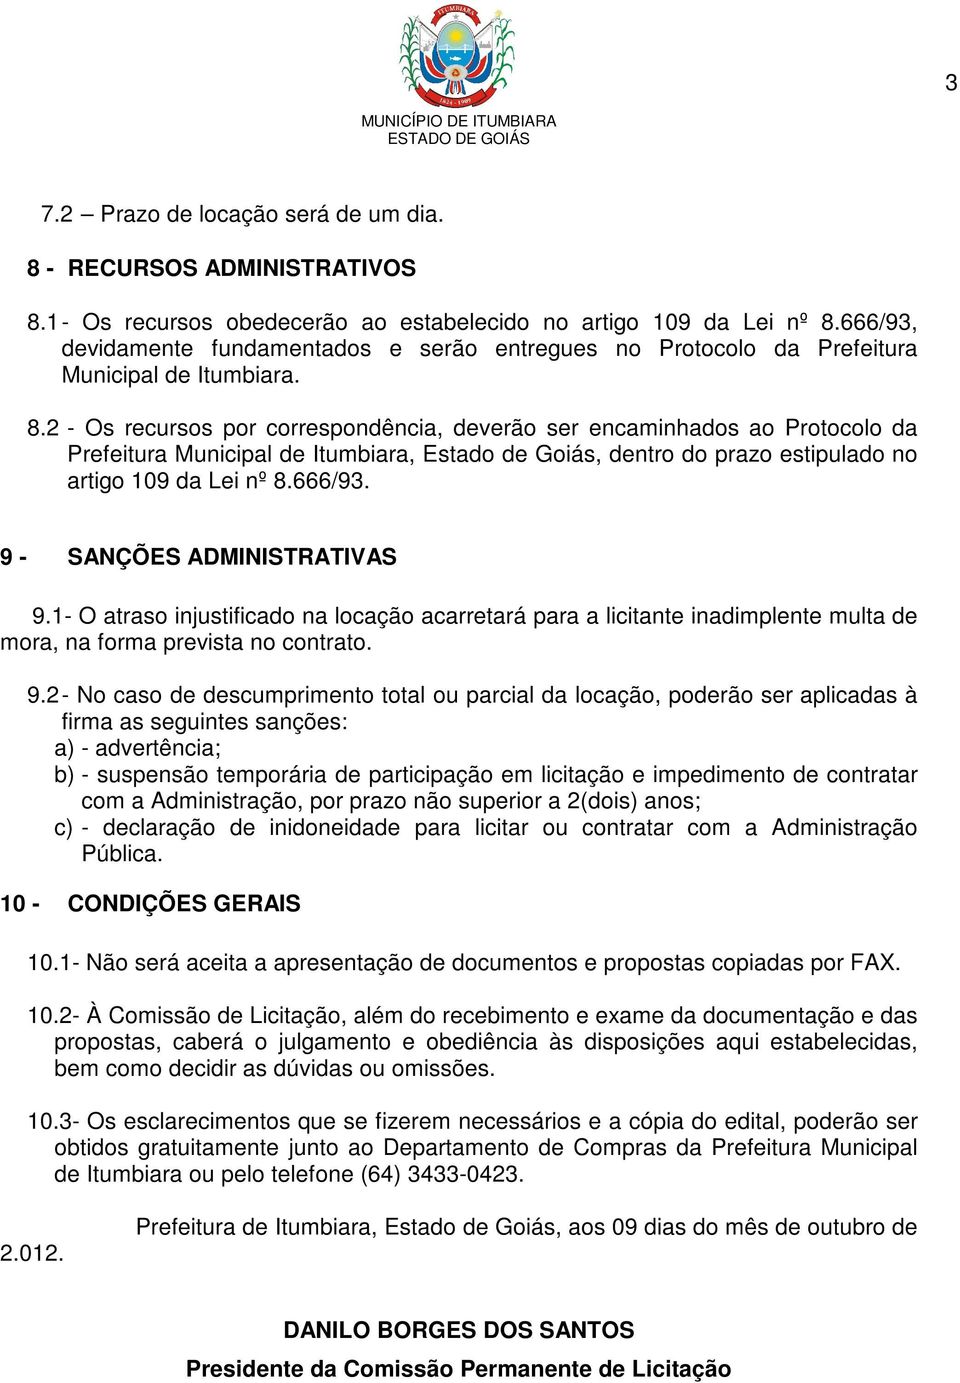 2 - Os recursos por correspondência, deverão ser encaminhados ao Protocolo da Prefeitura Municipal de Itumbiara, Estado de Goiás, dentro do prazo estipulado no artigo 109 da Lei nº 8.666/93.